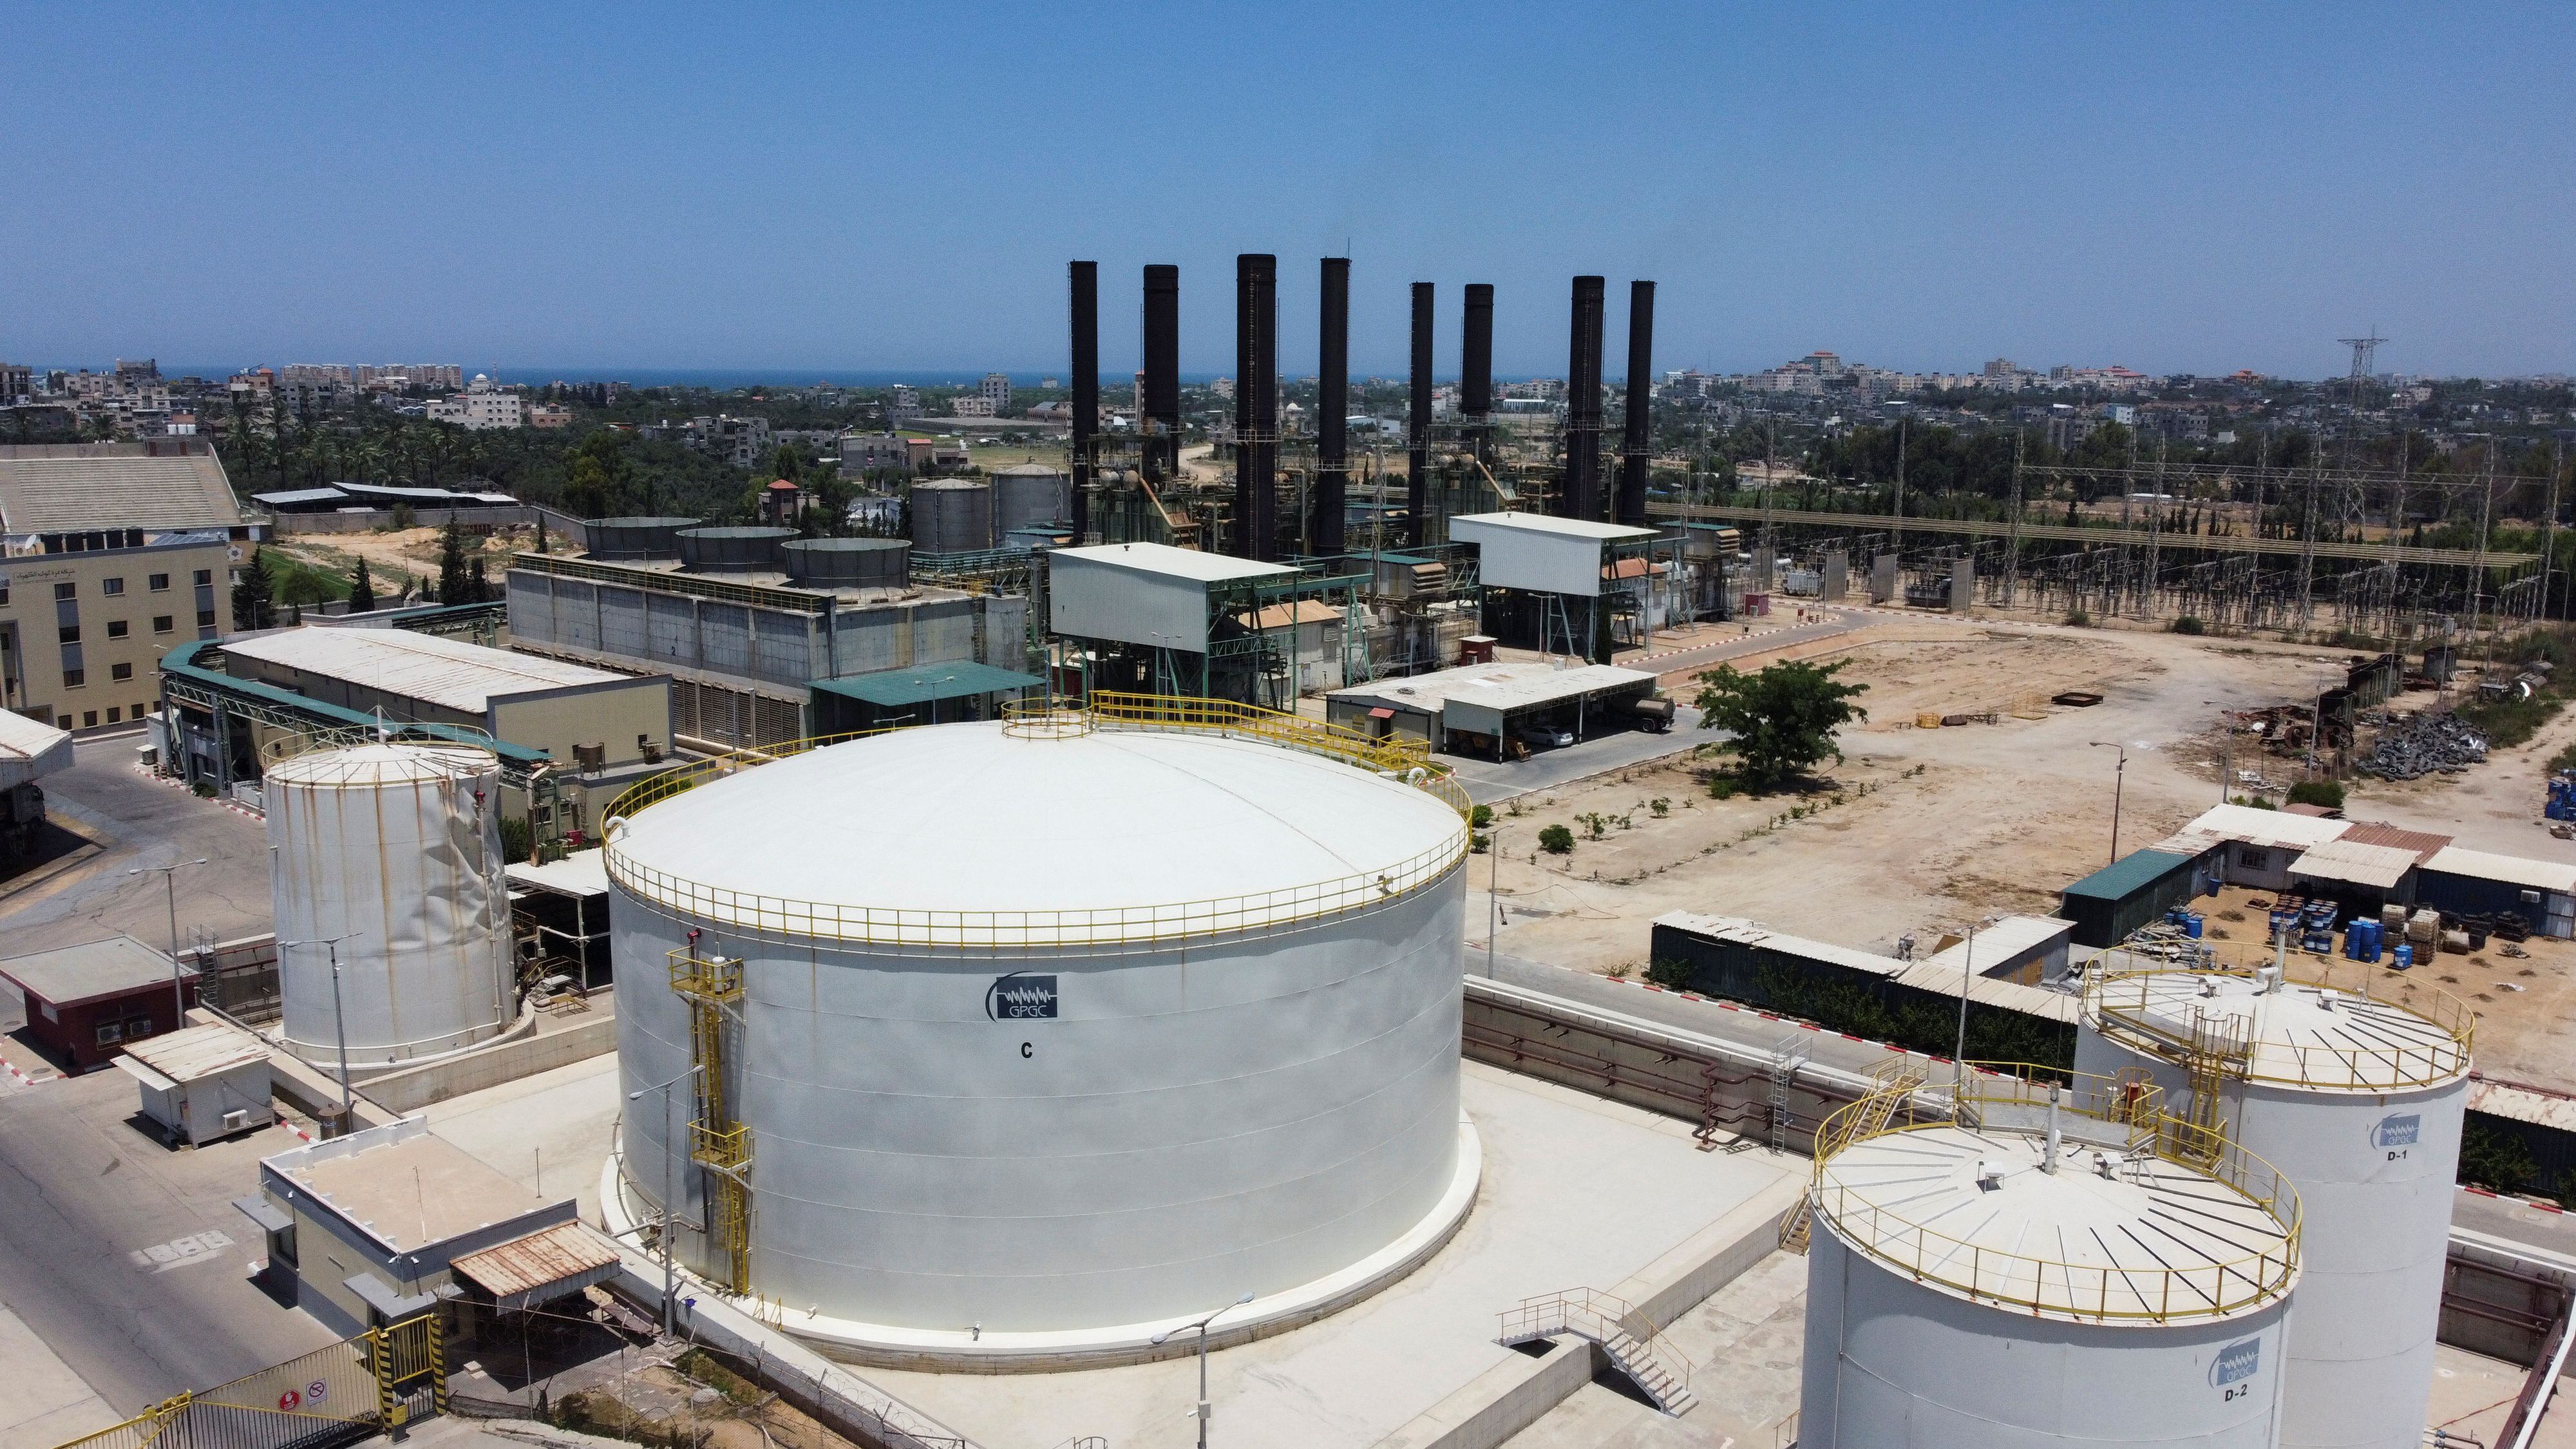 가자지구에 위치한 가자 발전소의 모습./로이터 연합뉴스